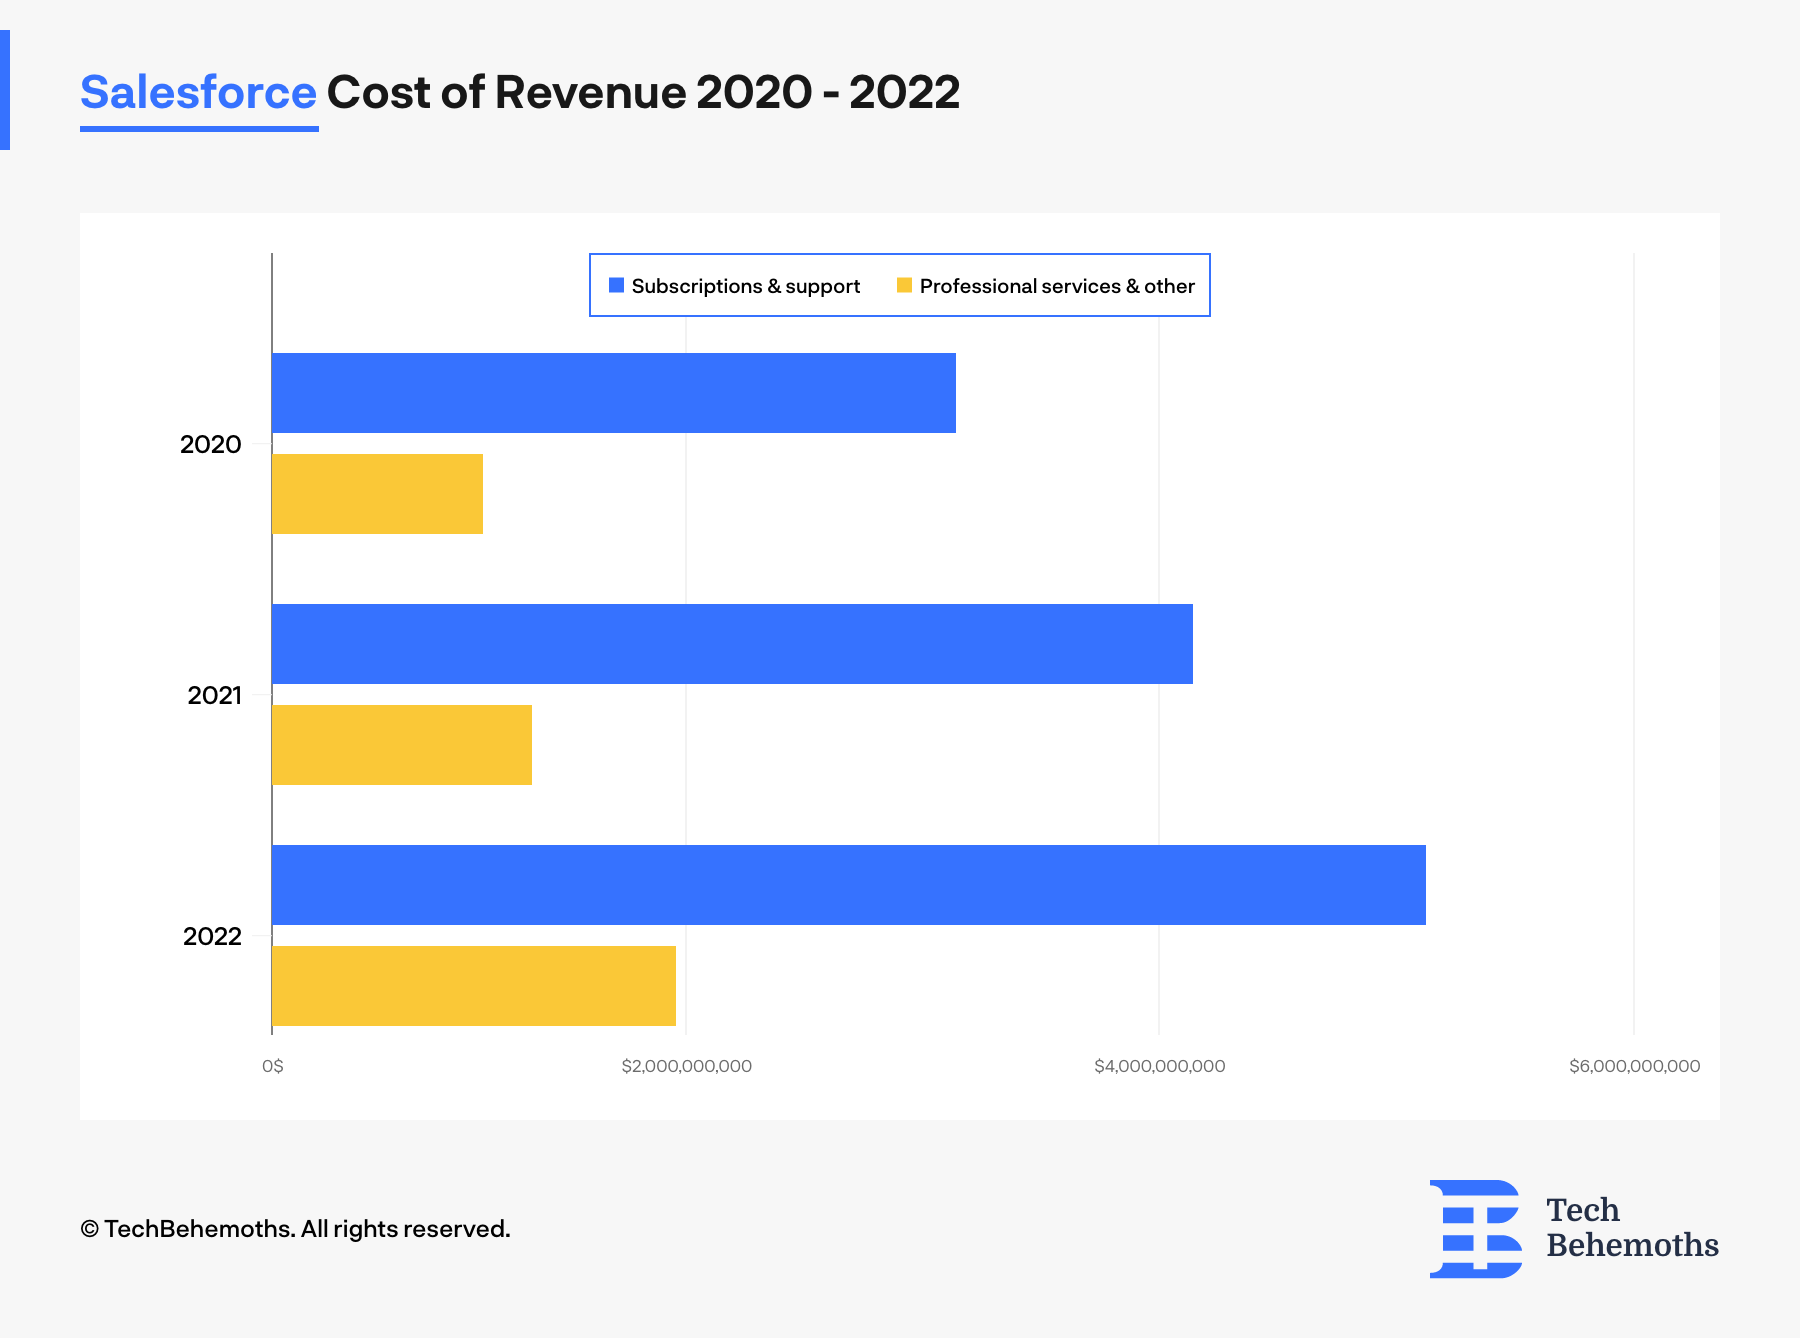 Salesforce cost of revenue between 2020-2022